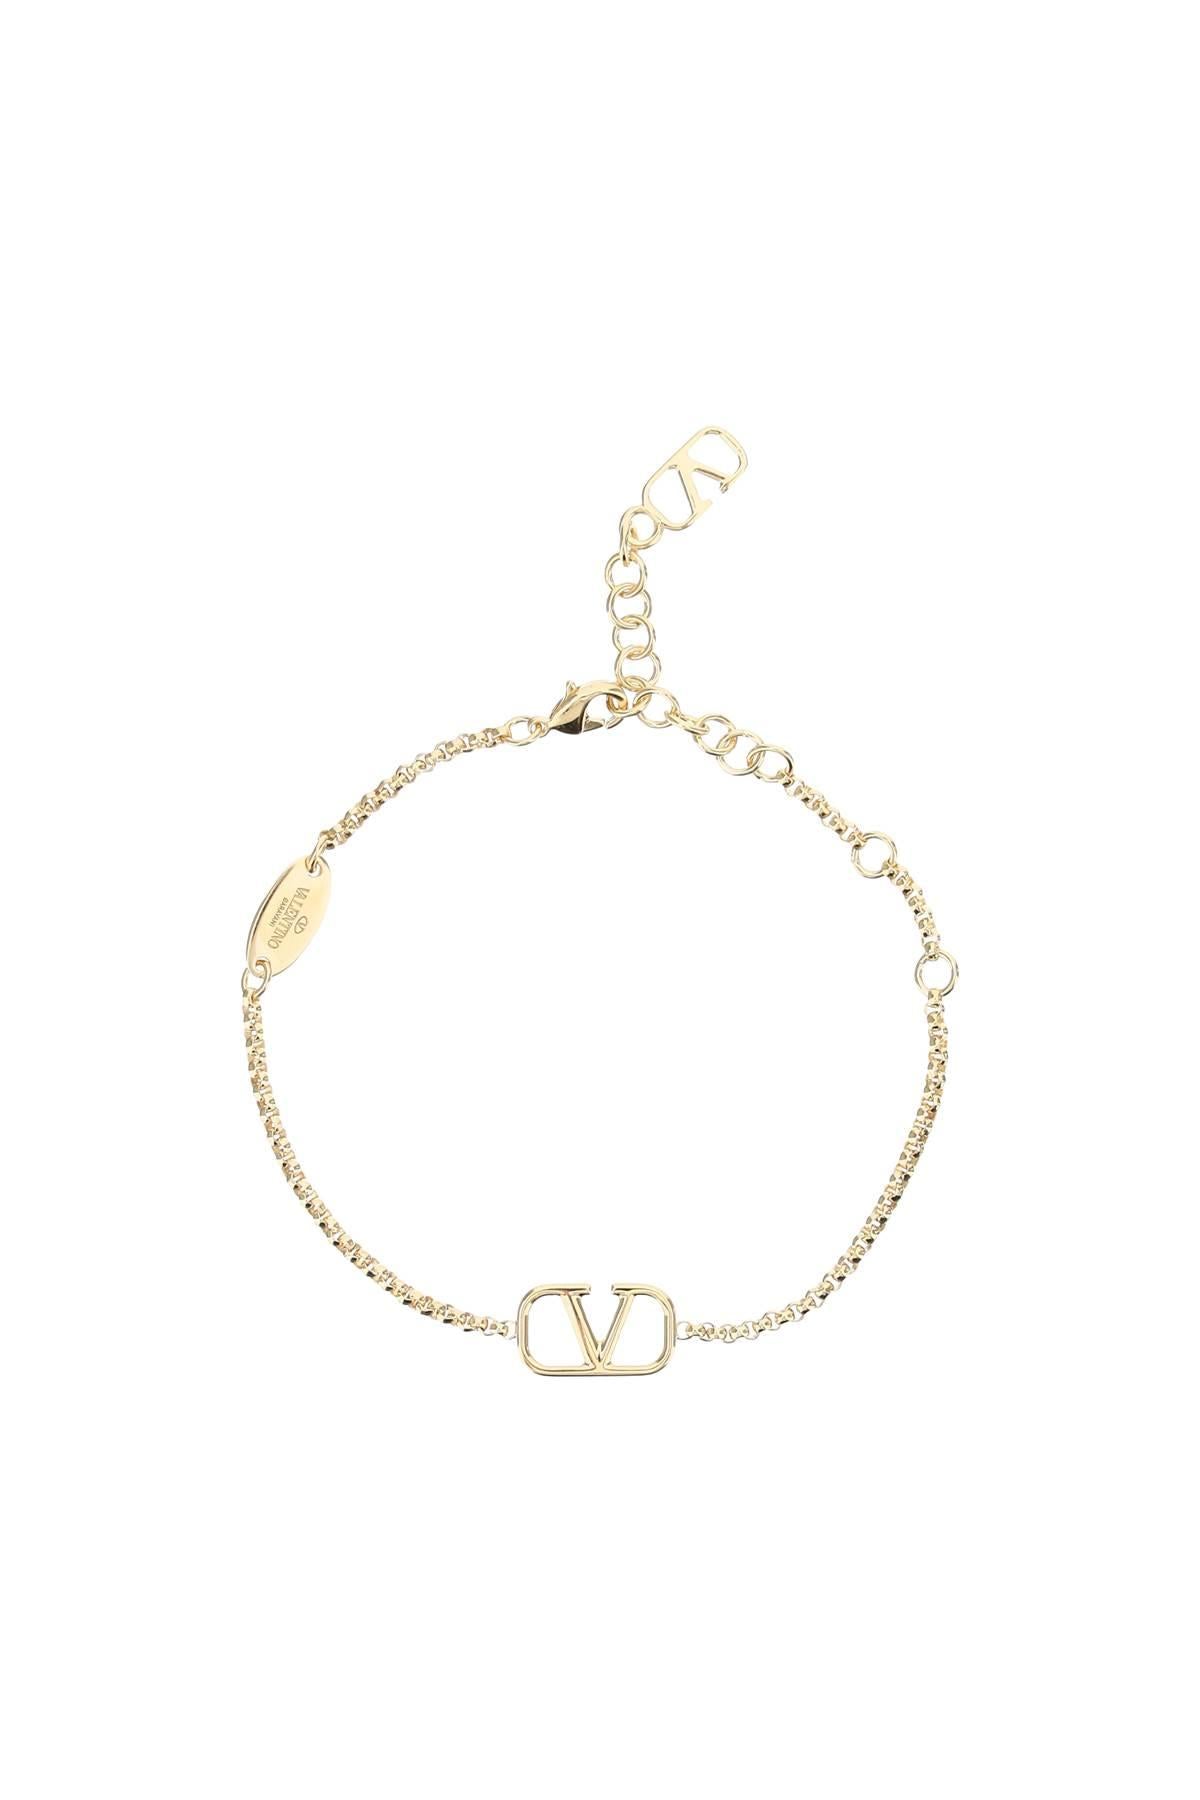 Valentino Garavani VLogo Signature chain bracelet - Gold